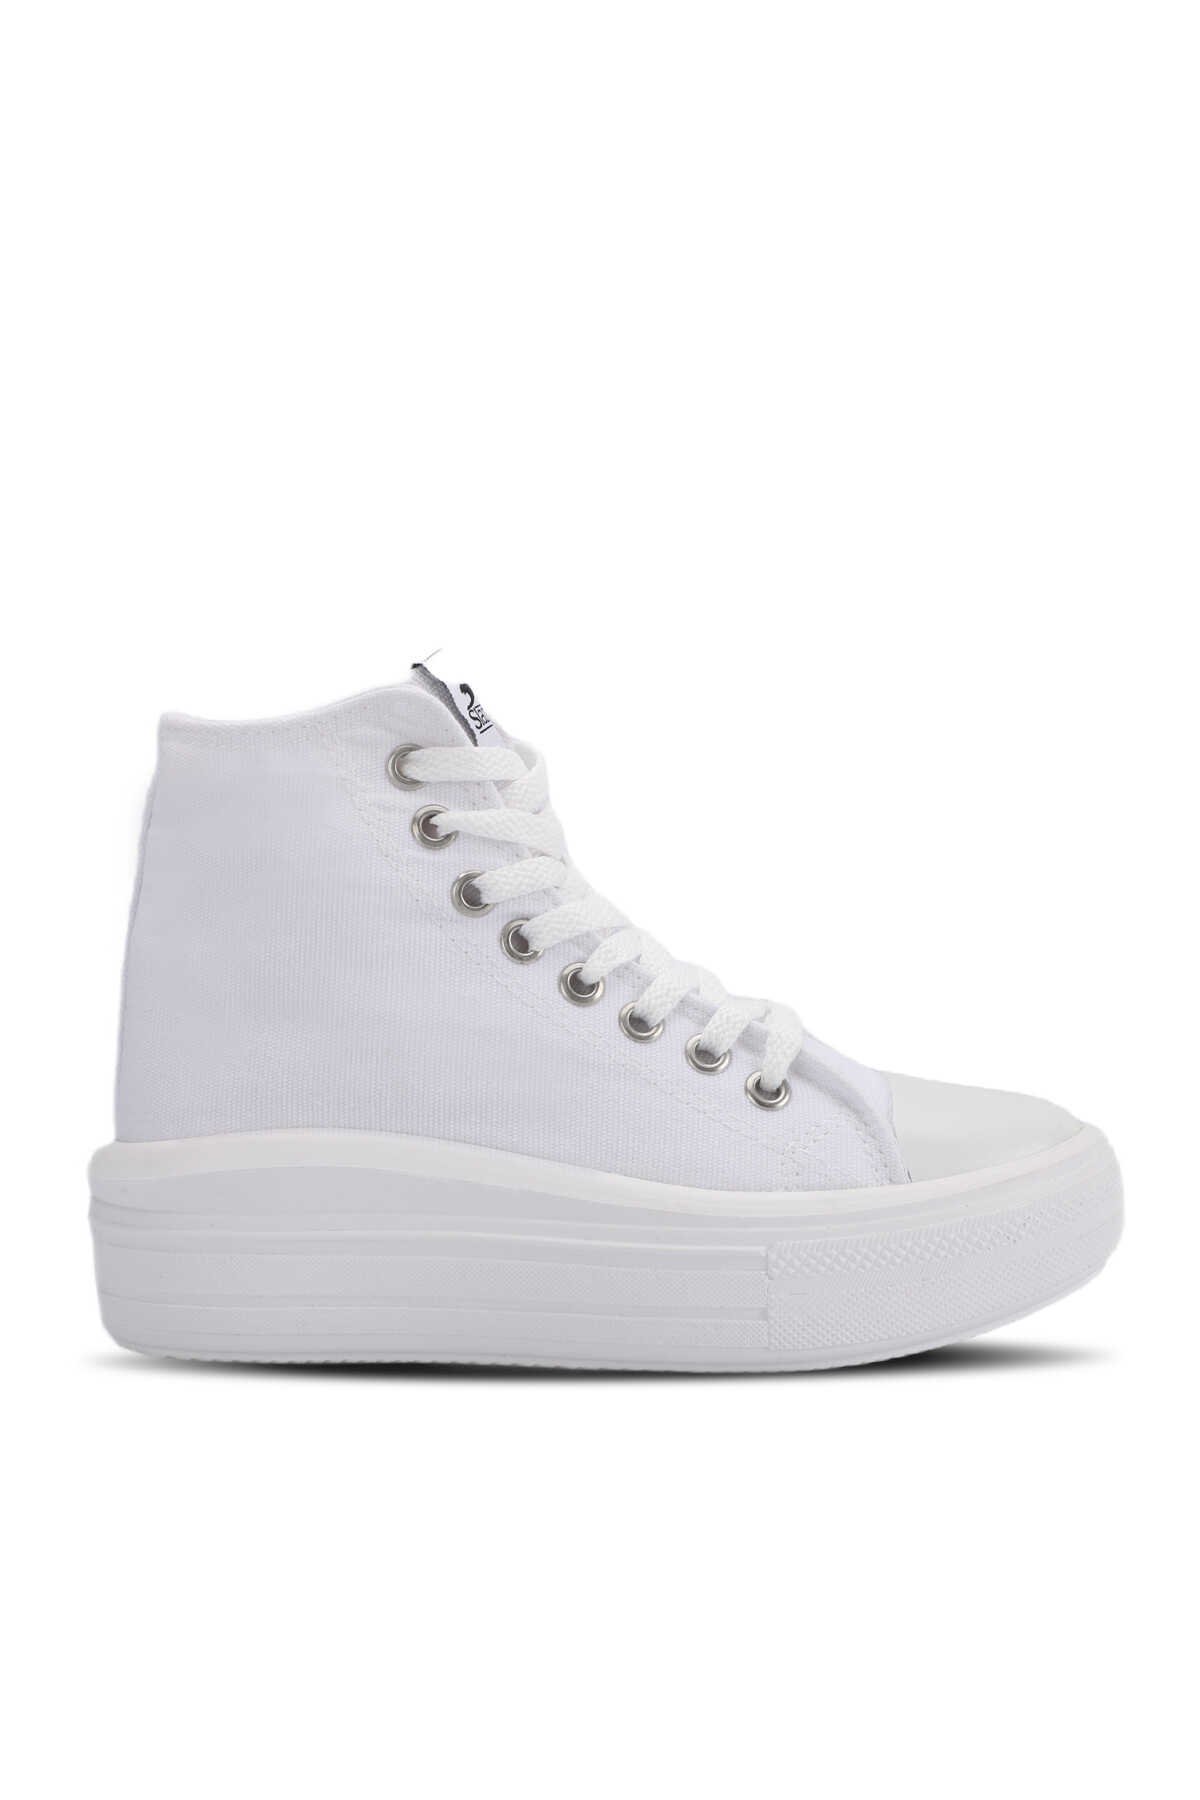 Slazenger - Slazenger SUN Sneaker Kadın Ayakkabı Beyaz